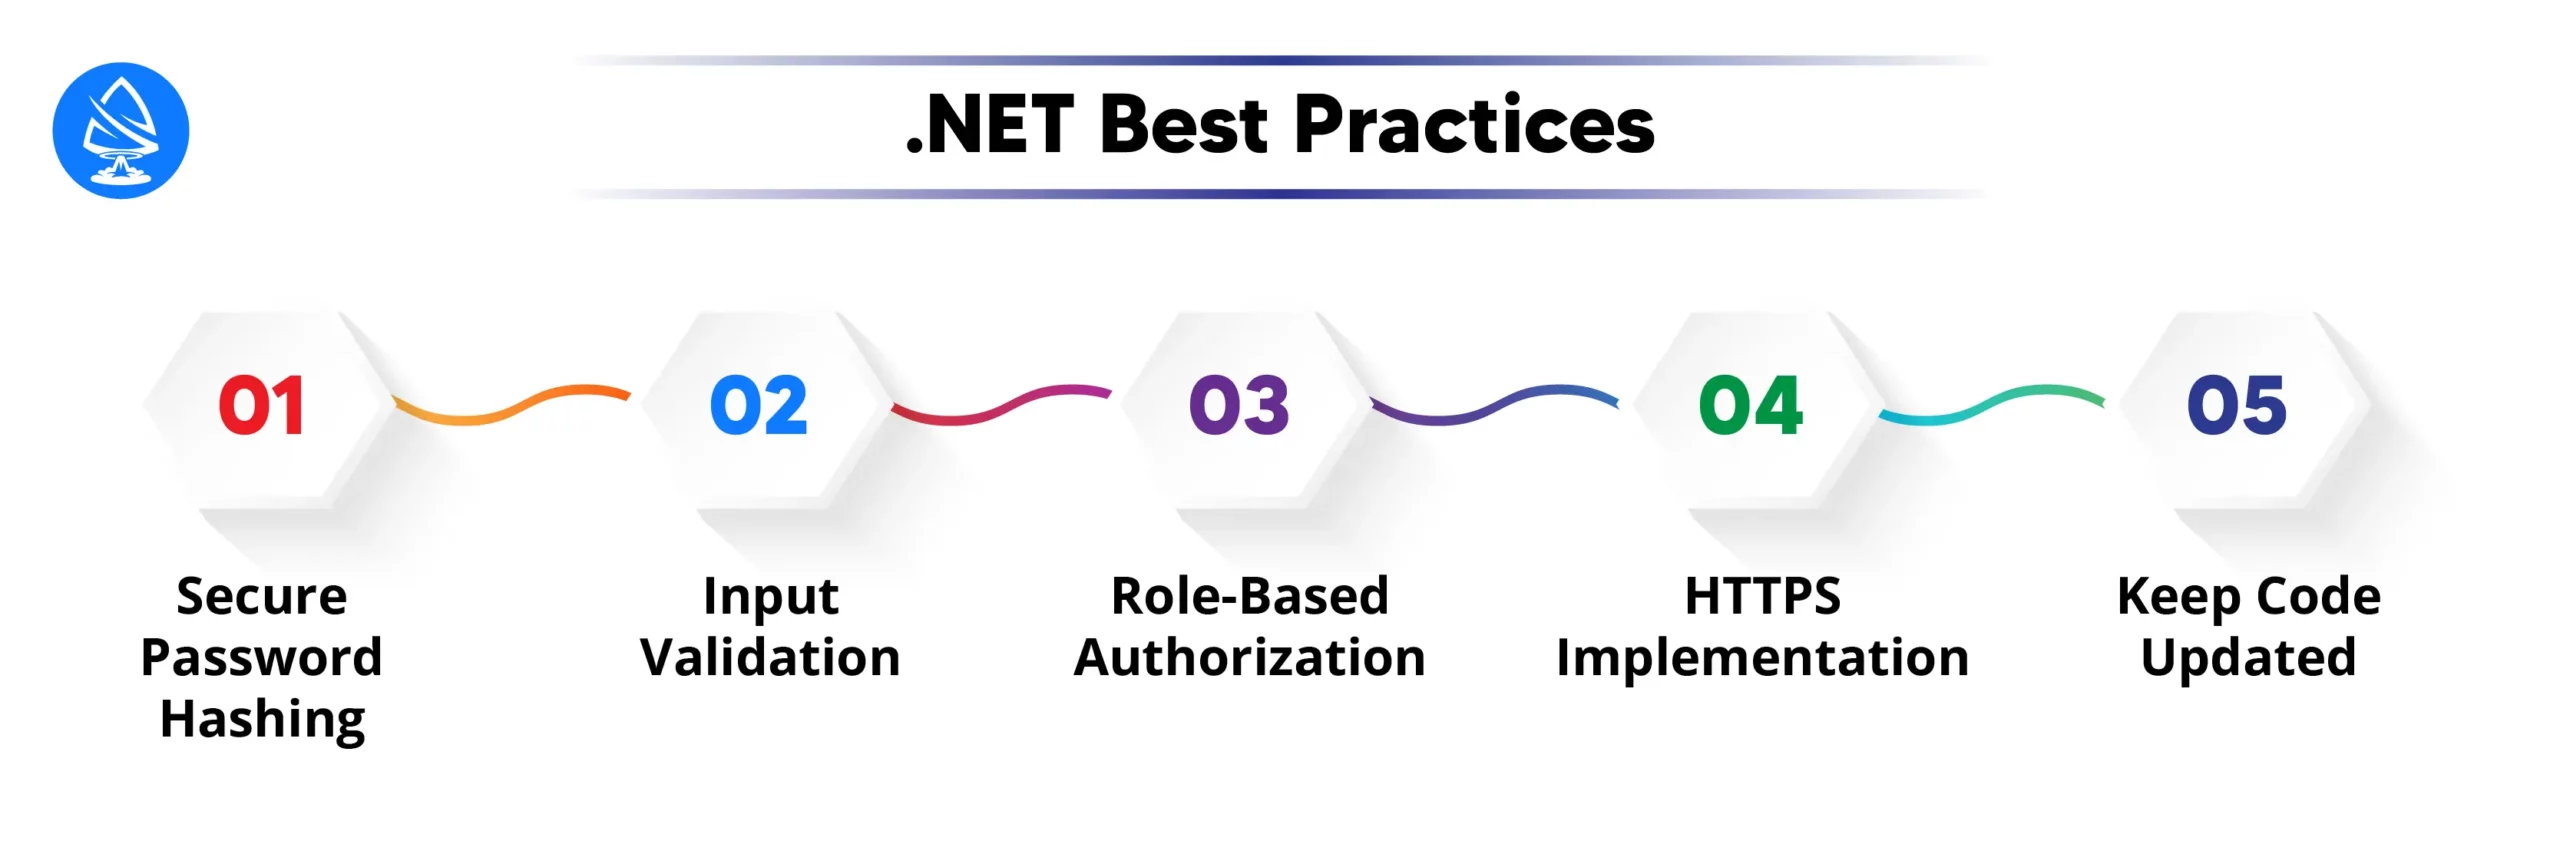 .NET Best Practices: 